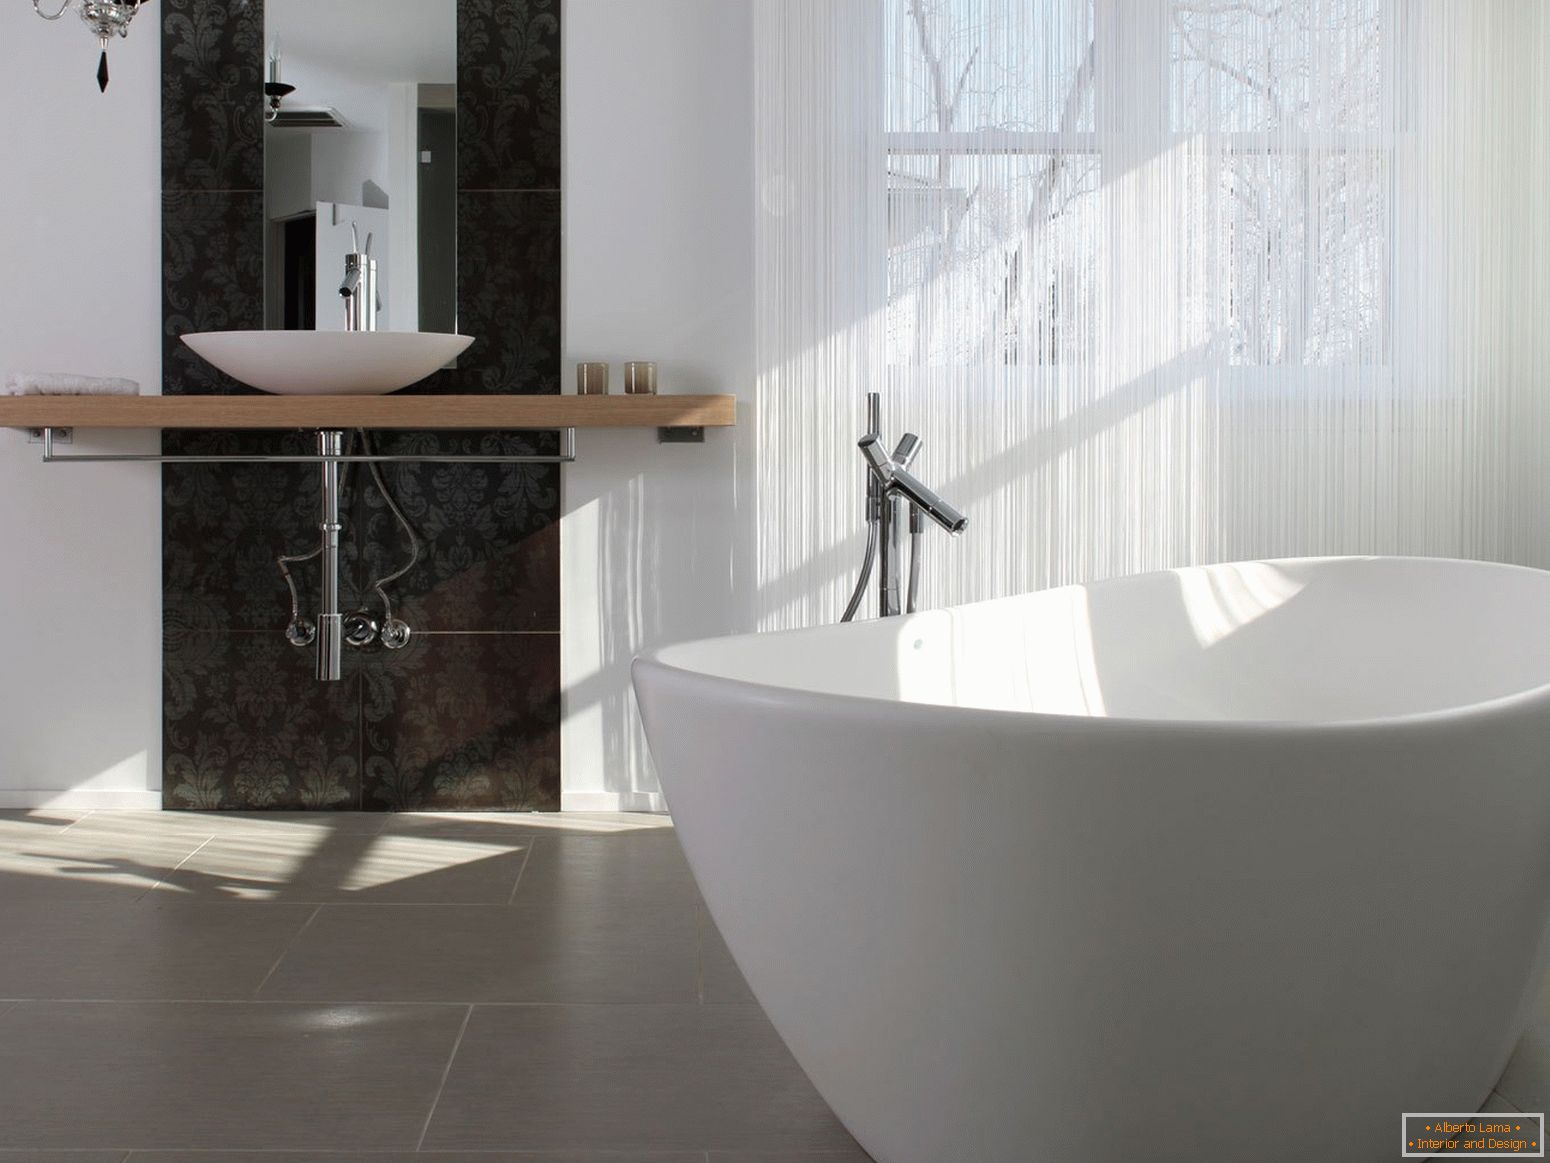 Luxusní a jednoduché v designu koupelny